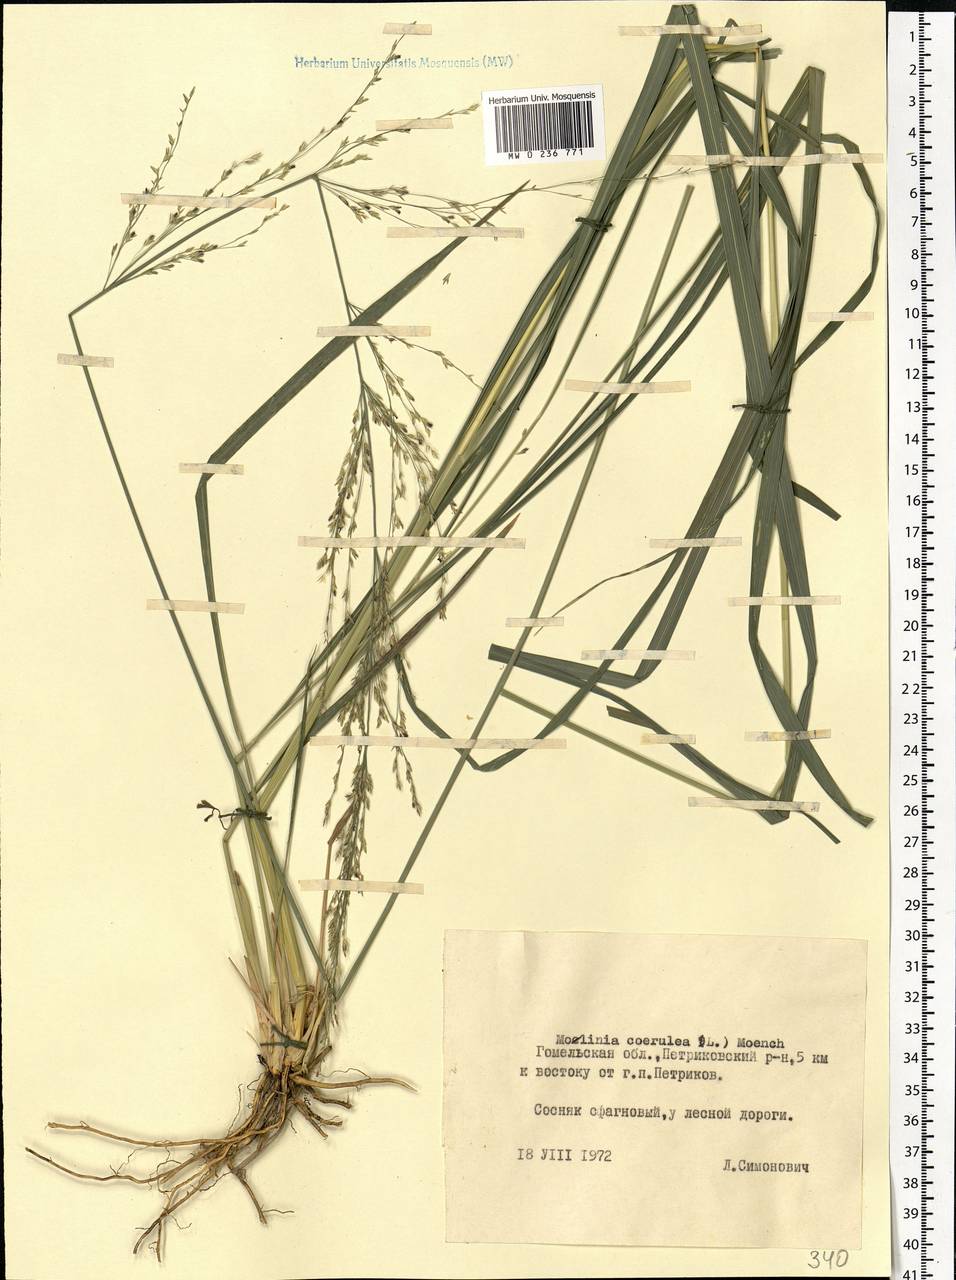 Molinia caerulea (L.) Moench, Eastern Europe, Belarus (E3a) (Belarus)